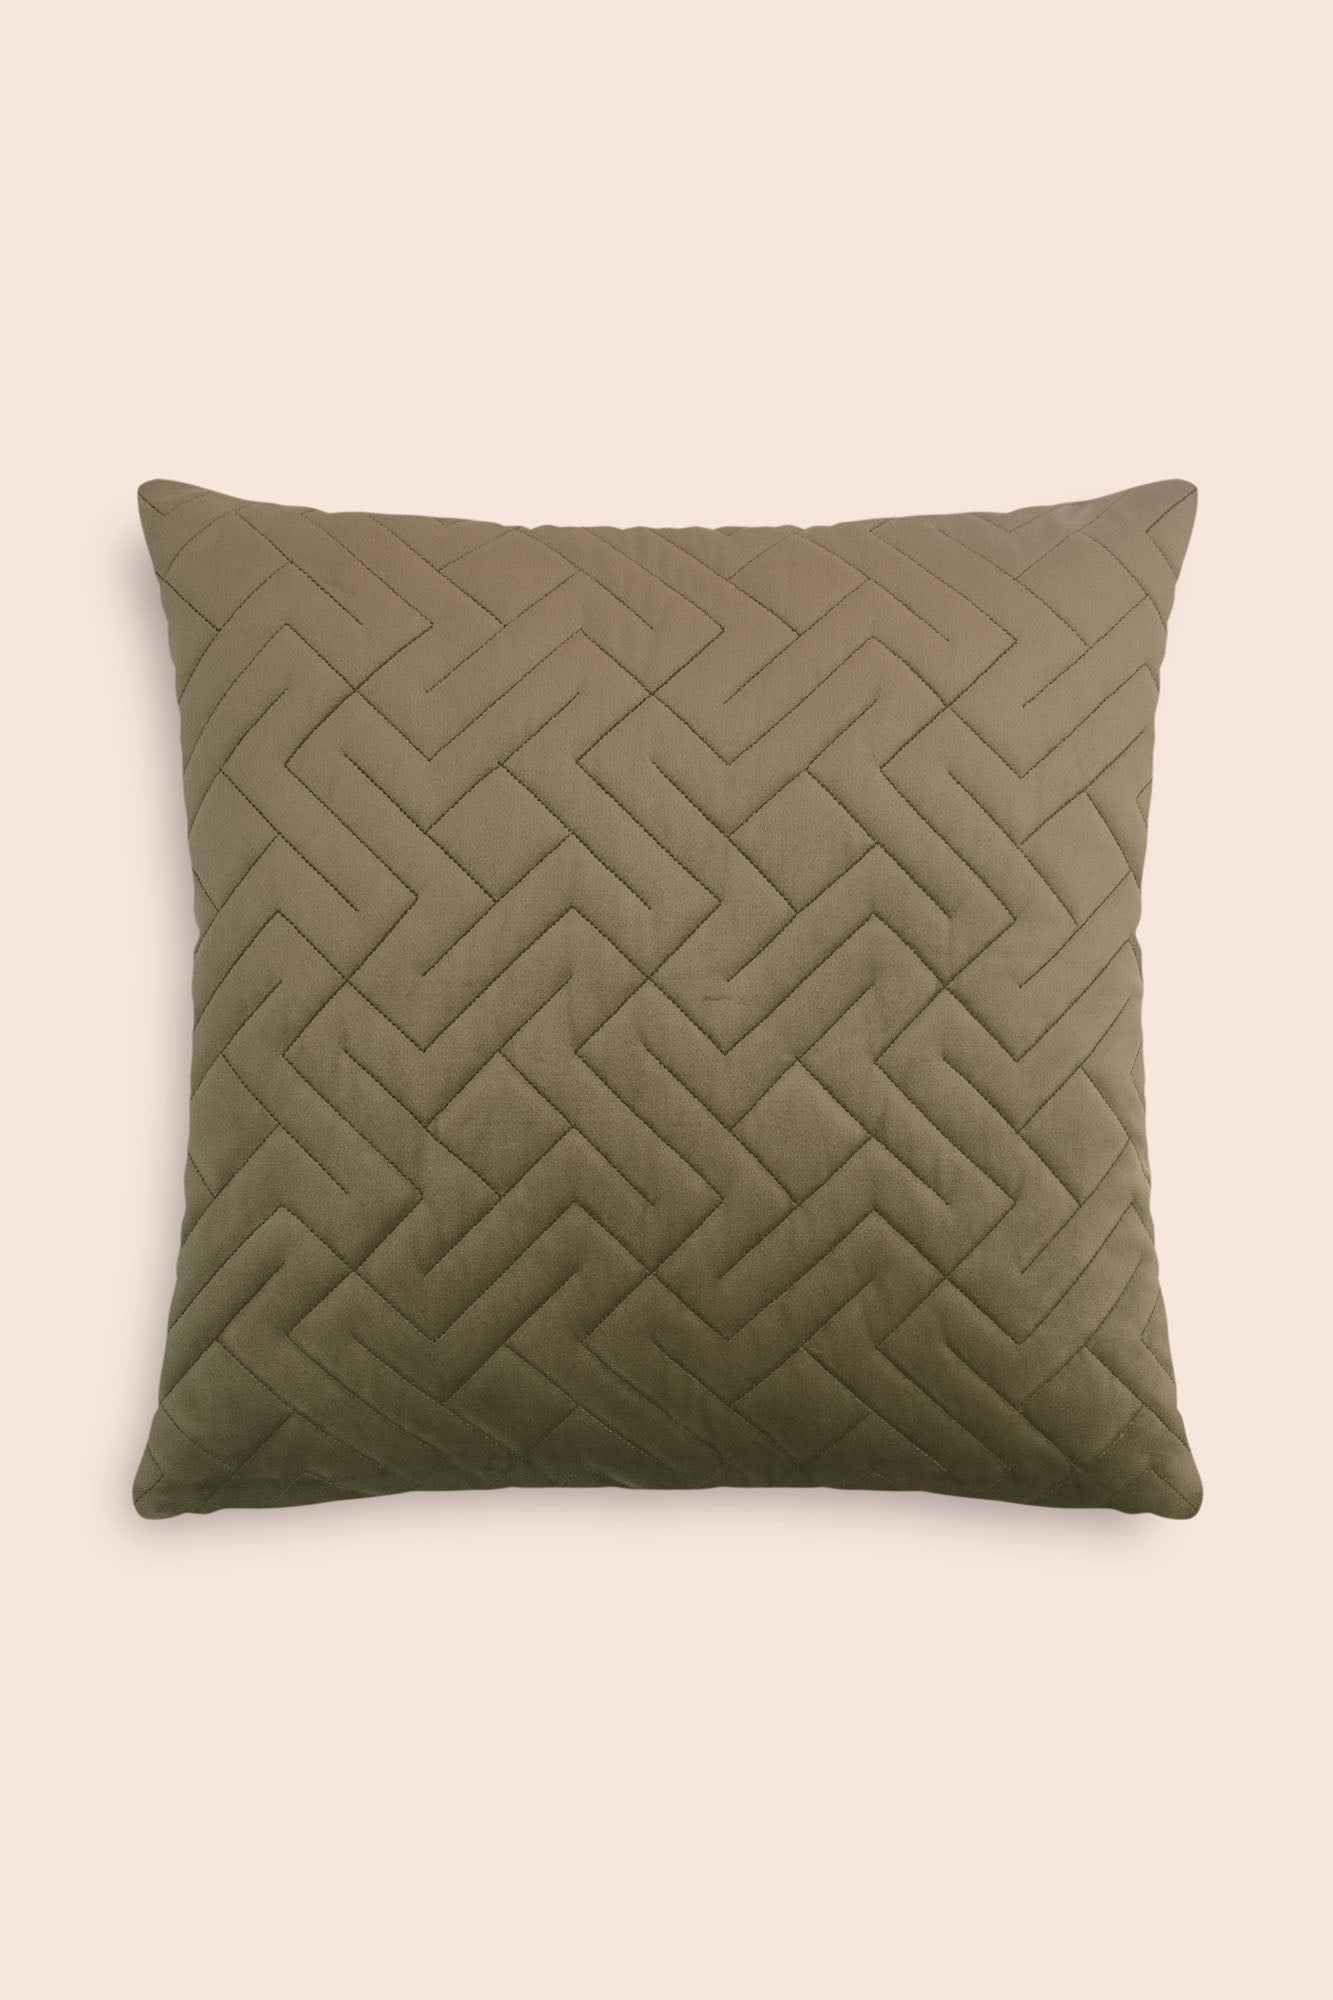 Clover velvet cushion cover